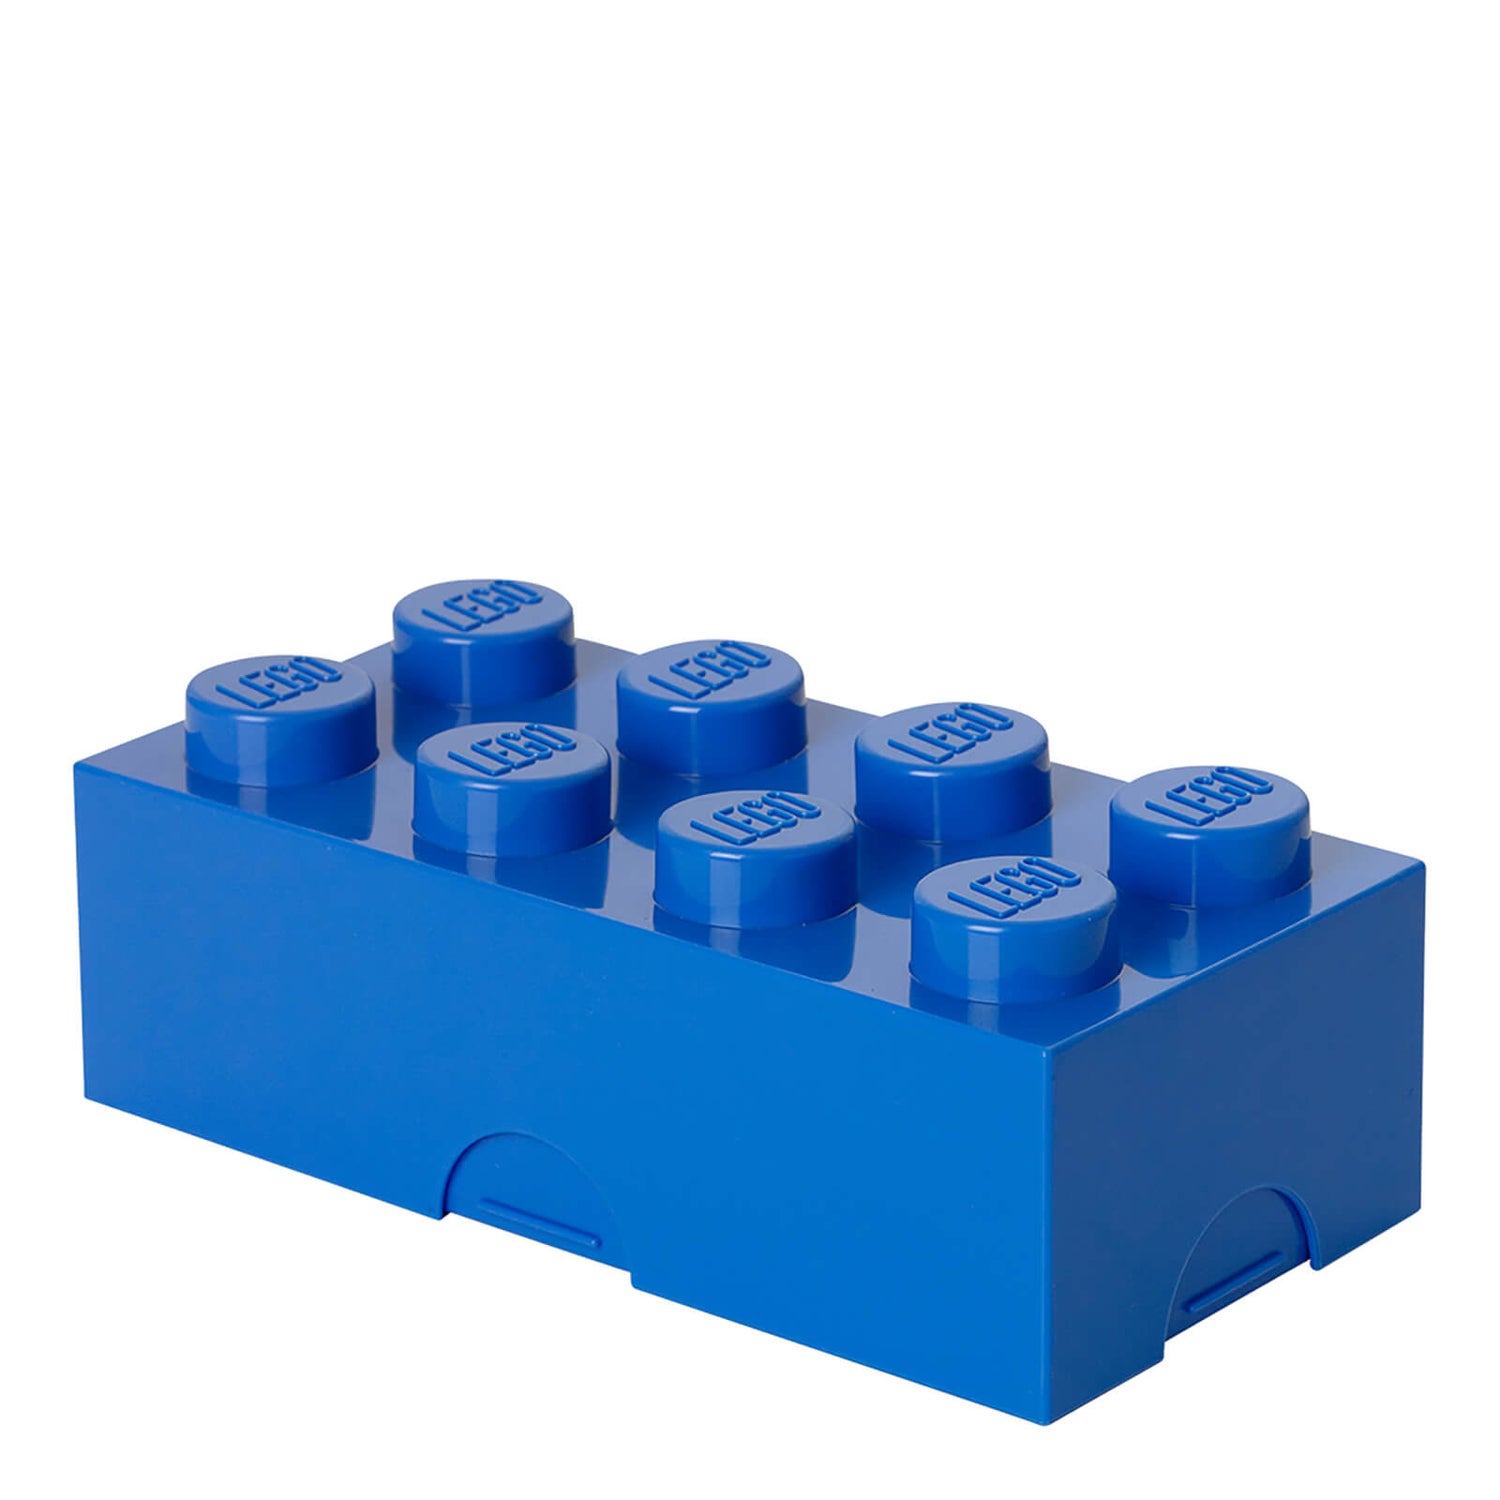 LEGO Lunch Box - Bright Blue